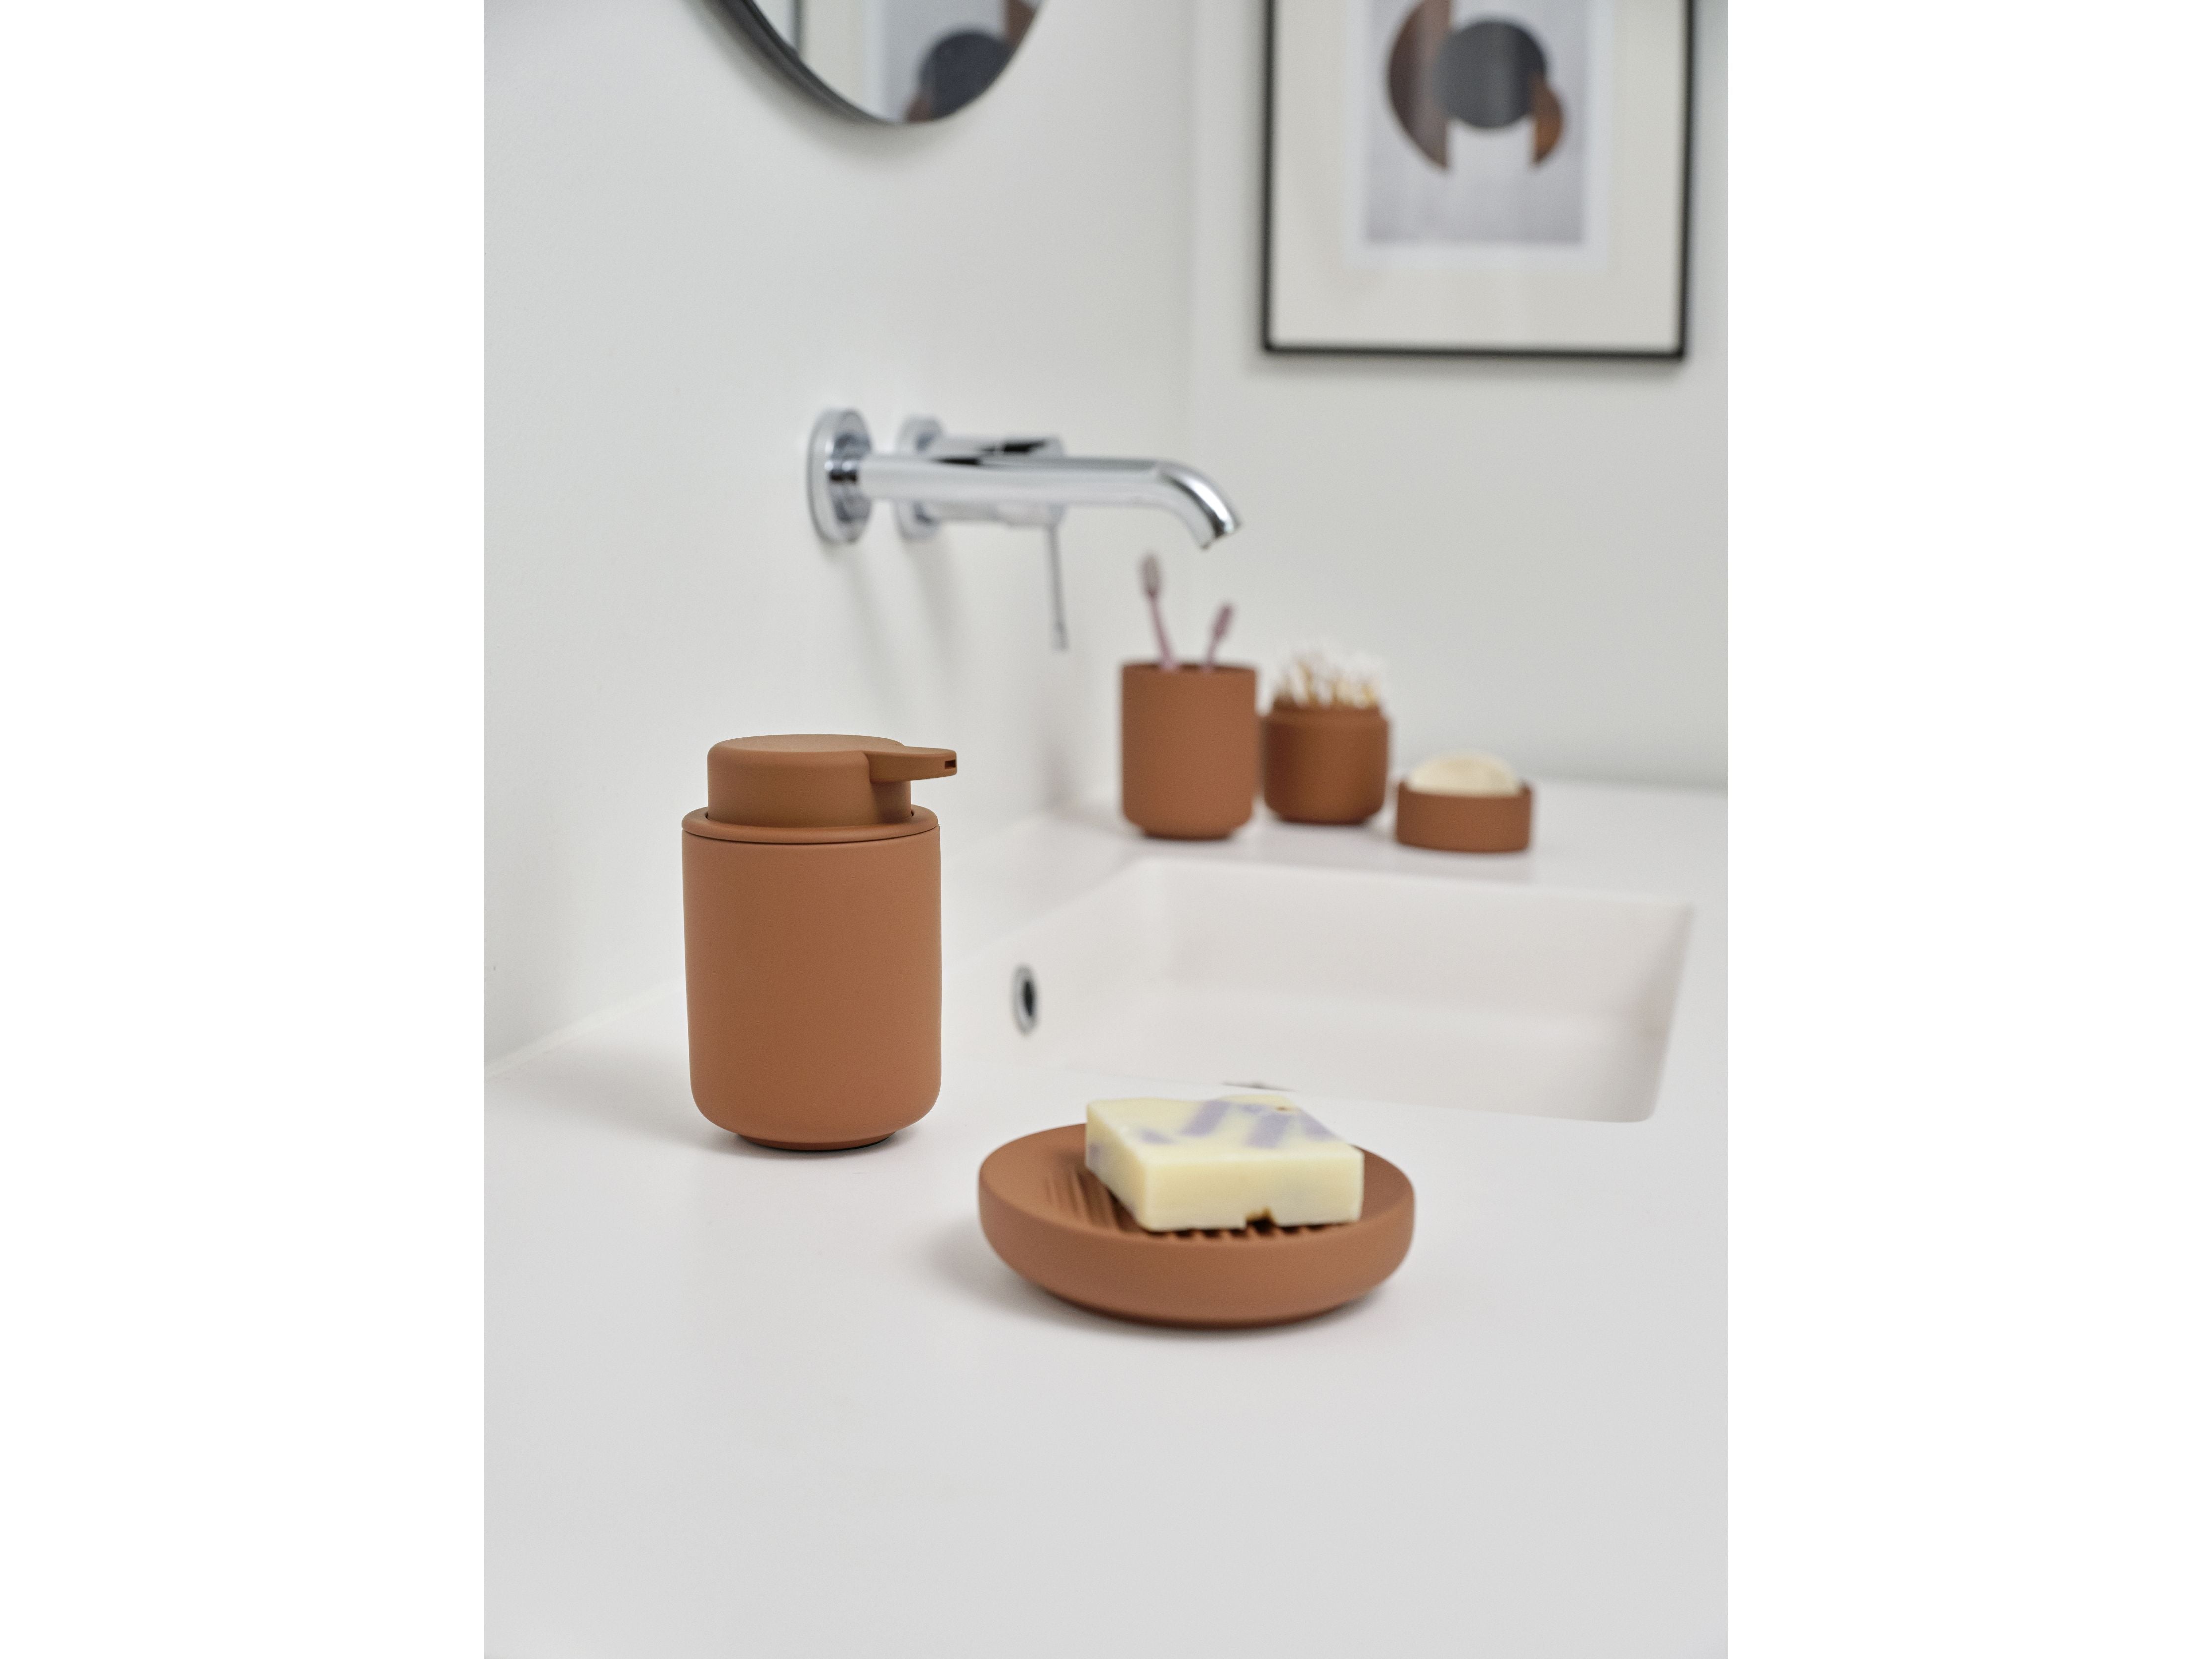 Zone Danmark Ume Soap Dispenser 0,25 liter, terracotta